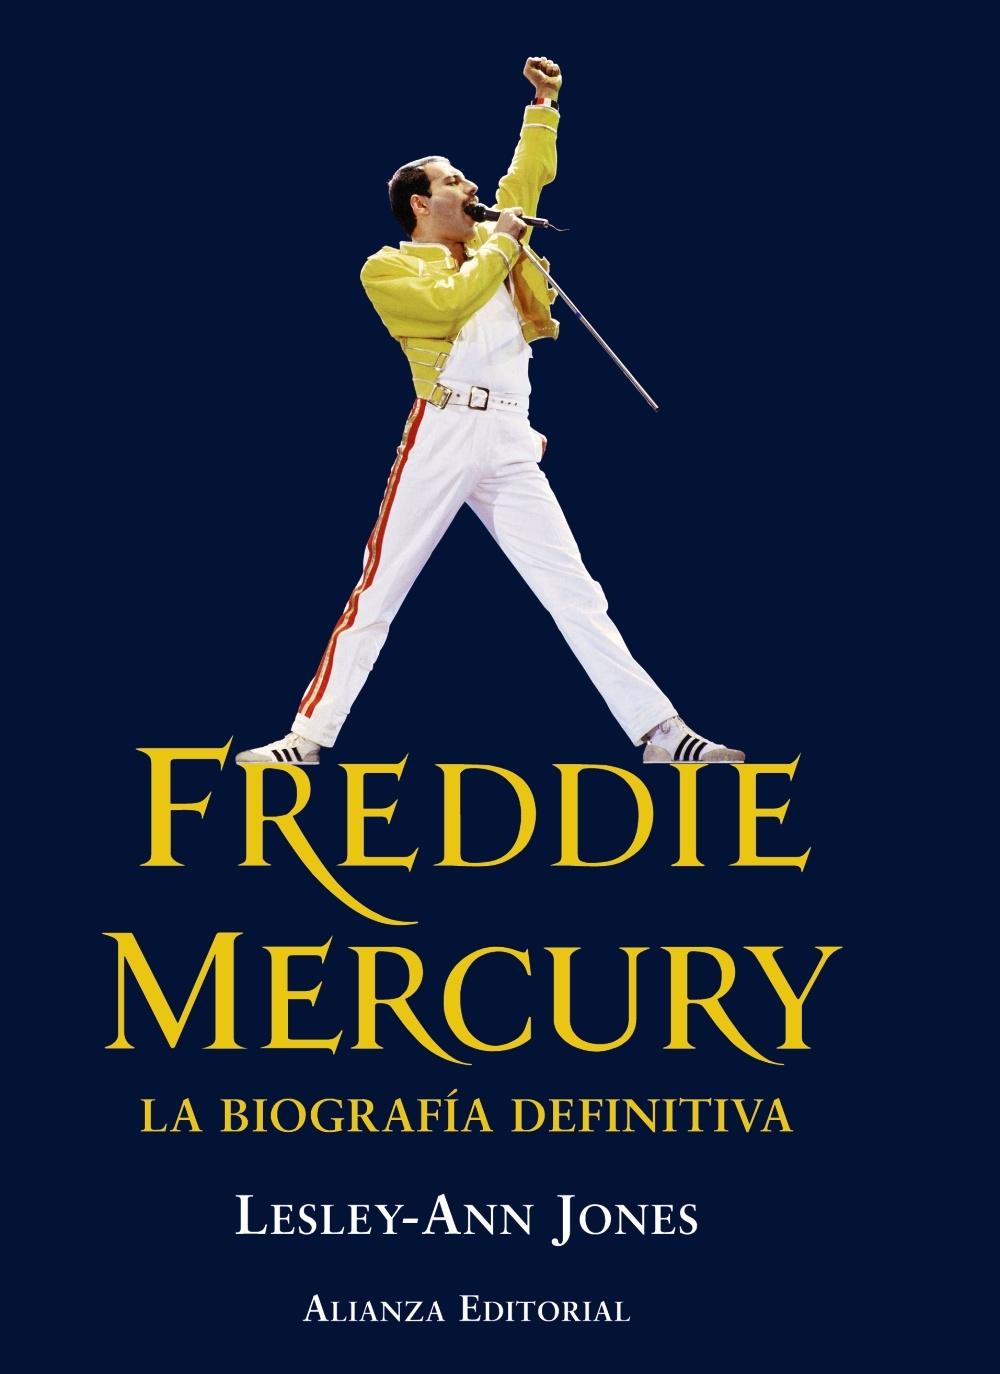 Freddie Mercury "La Biografía Definitiva". 